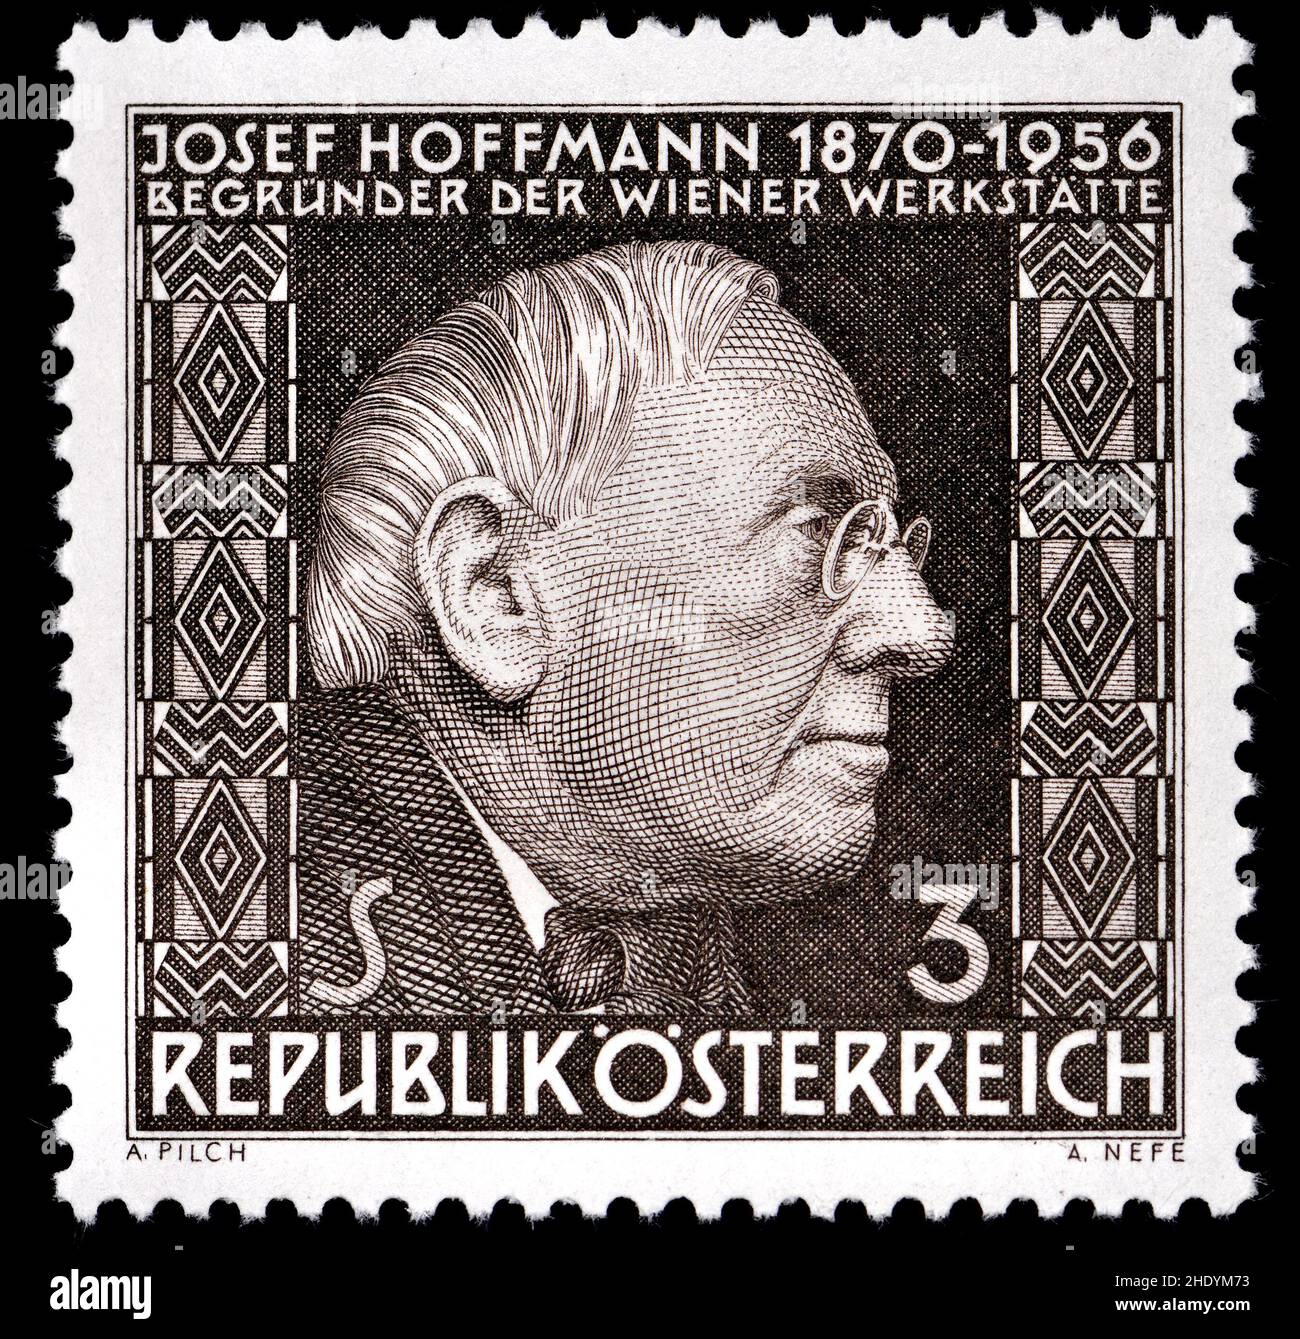 Timbre-poste autrichien (19) : Josef Hoffmann (1870 – 1956) architecte et designer autrichien, l'un des fondateurs de la Sécession de Vienne Banque D'Images